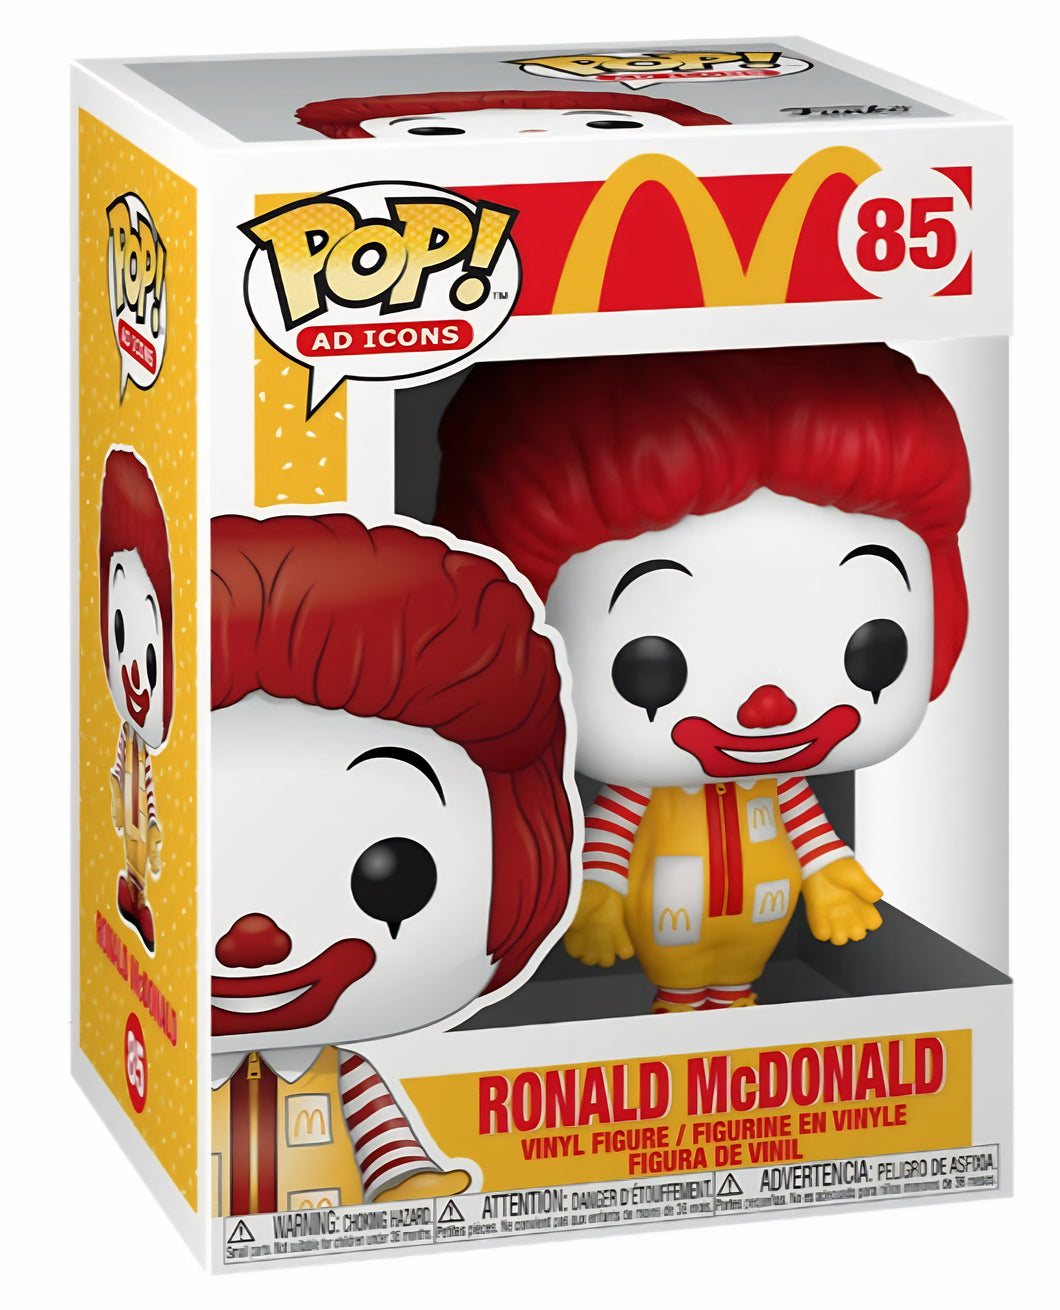 POP! Ad Icons: 85 McDonalds, Ronald McDonald